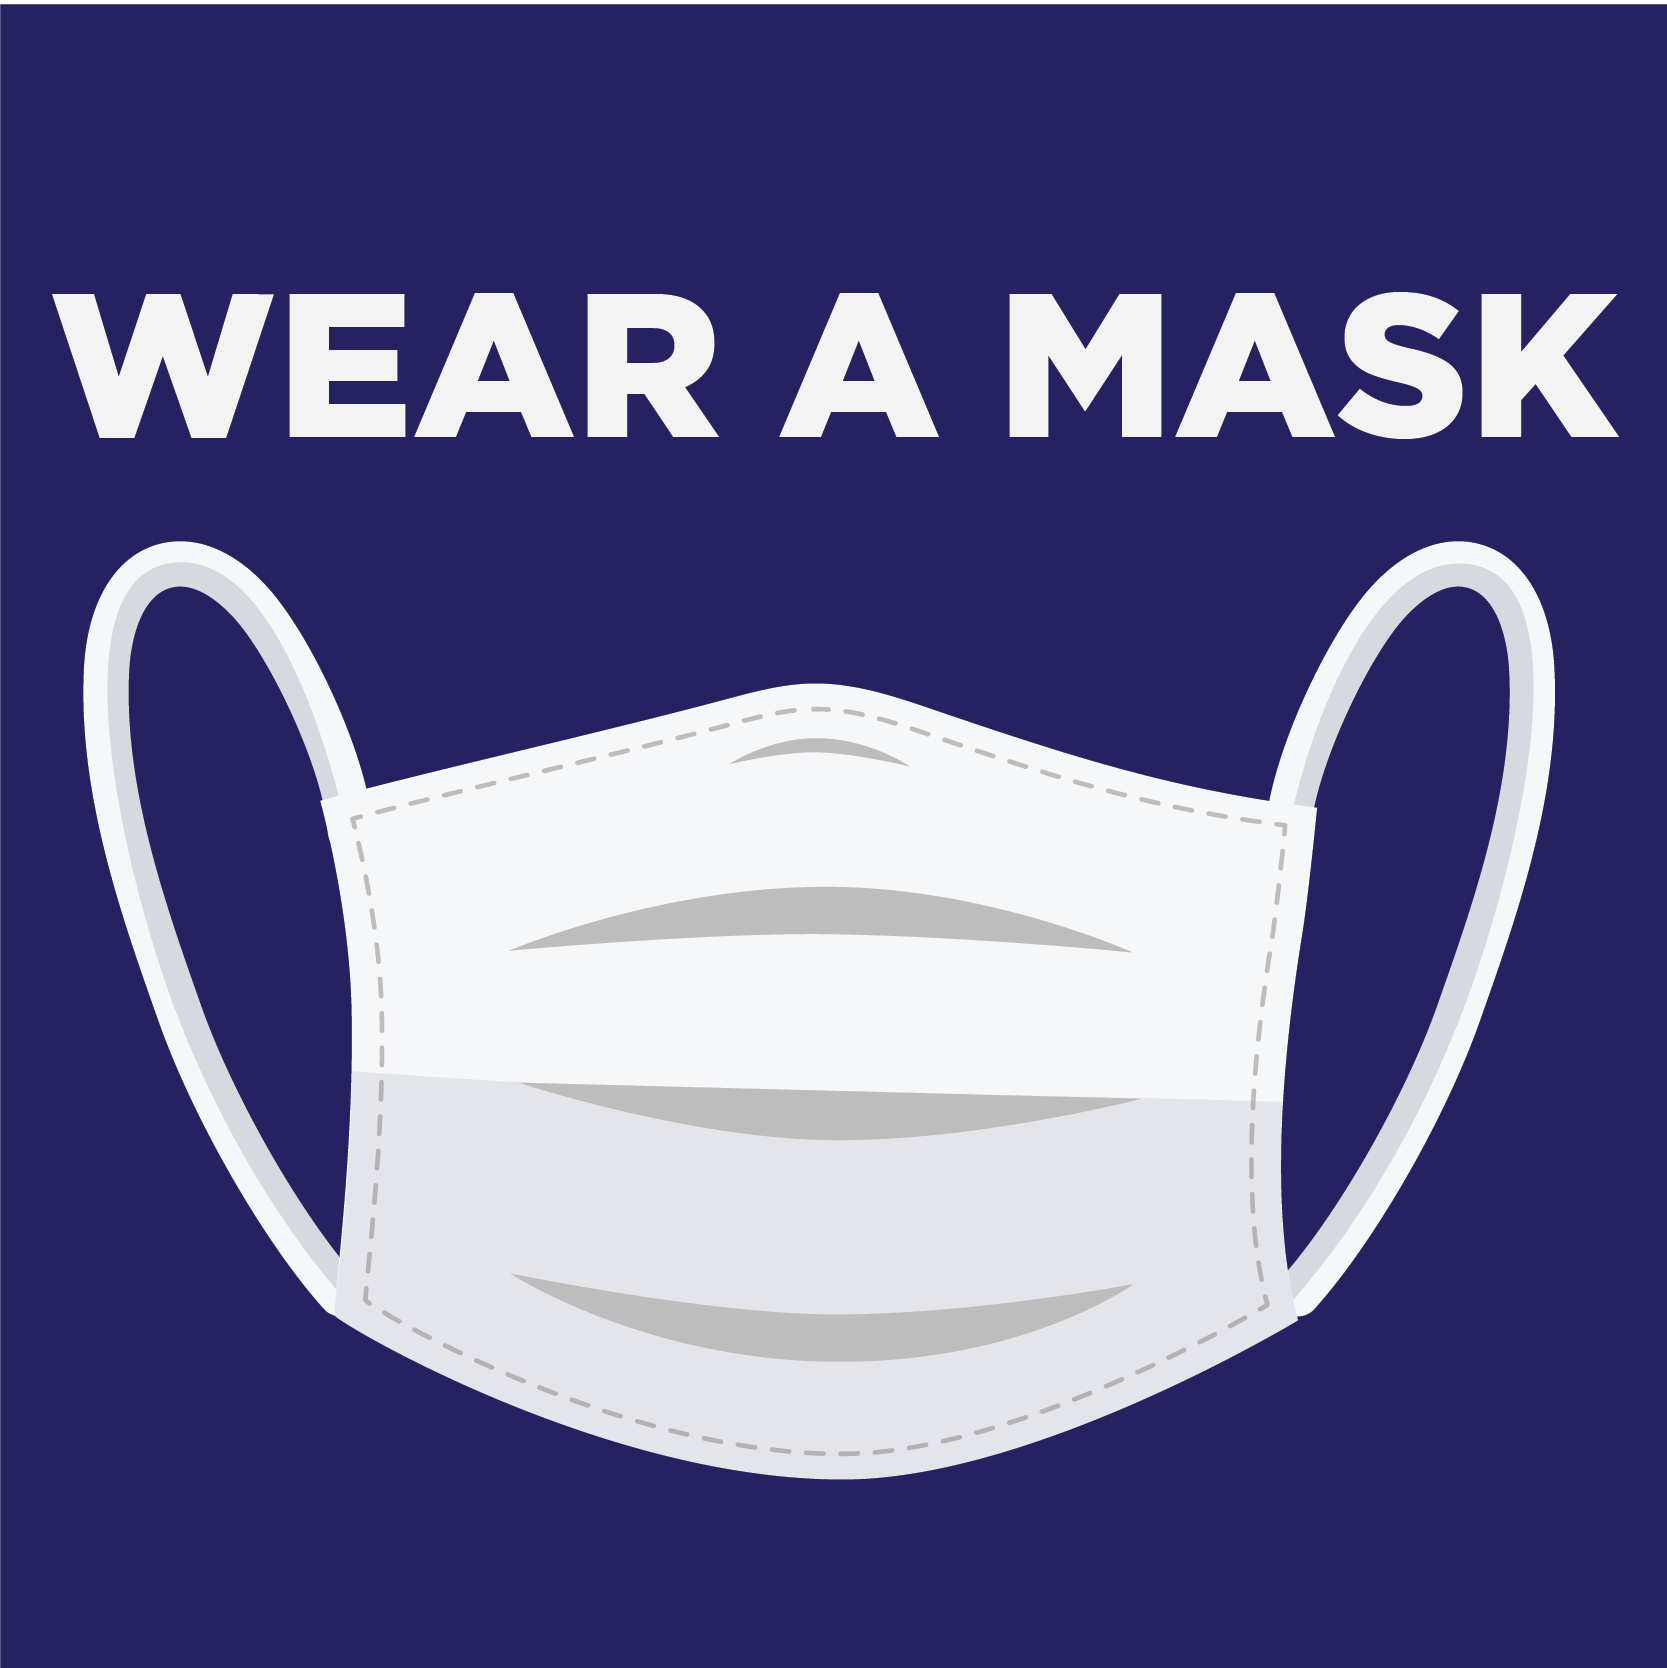 Wear a Mask_3 - Instagram